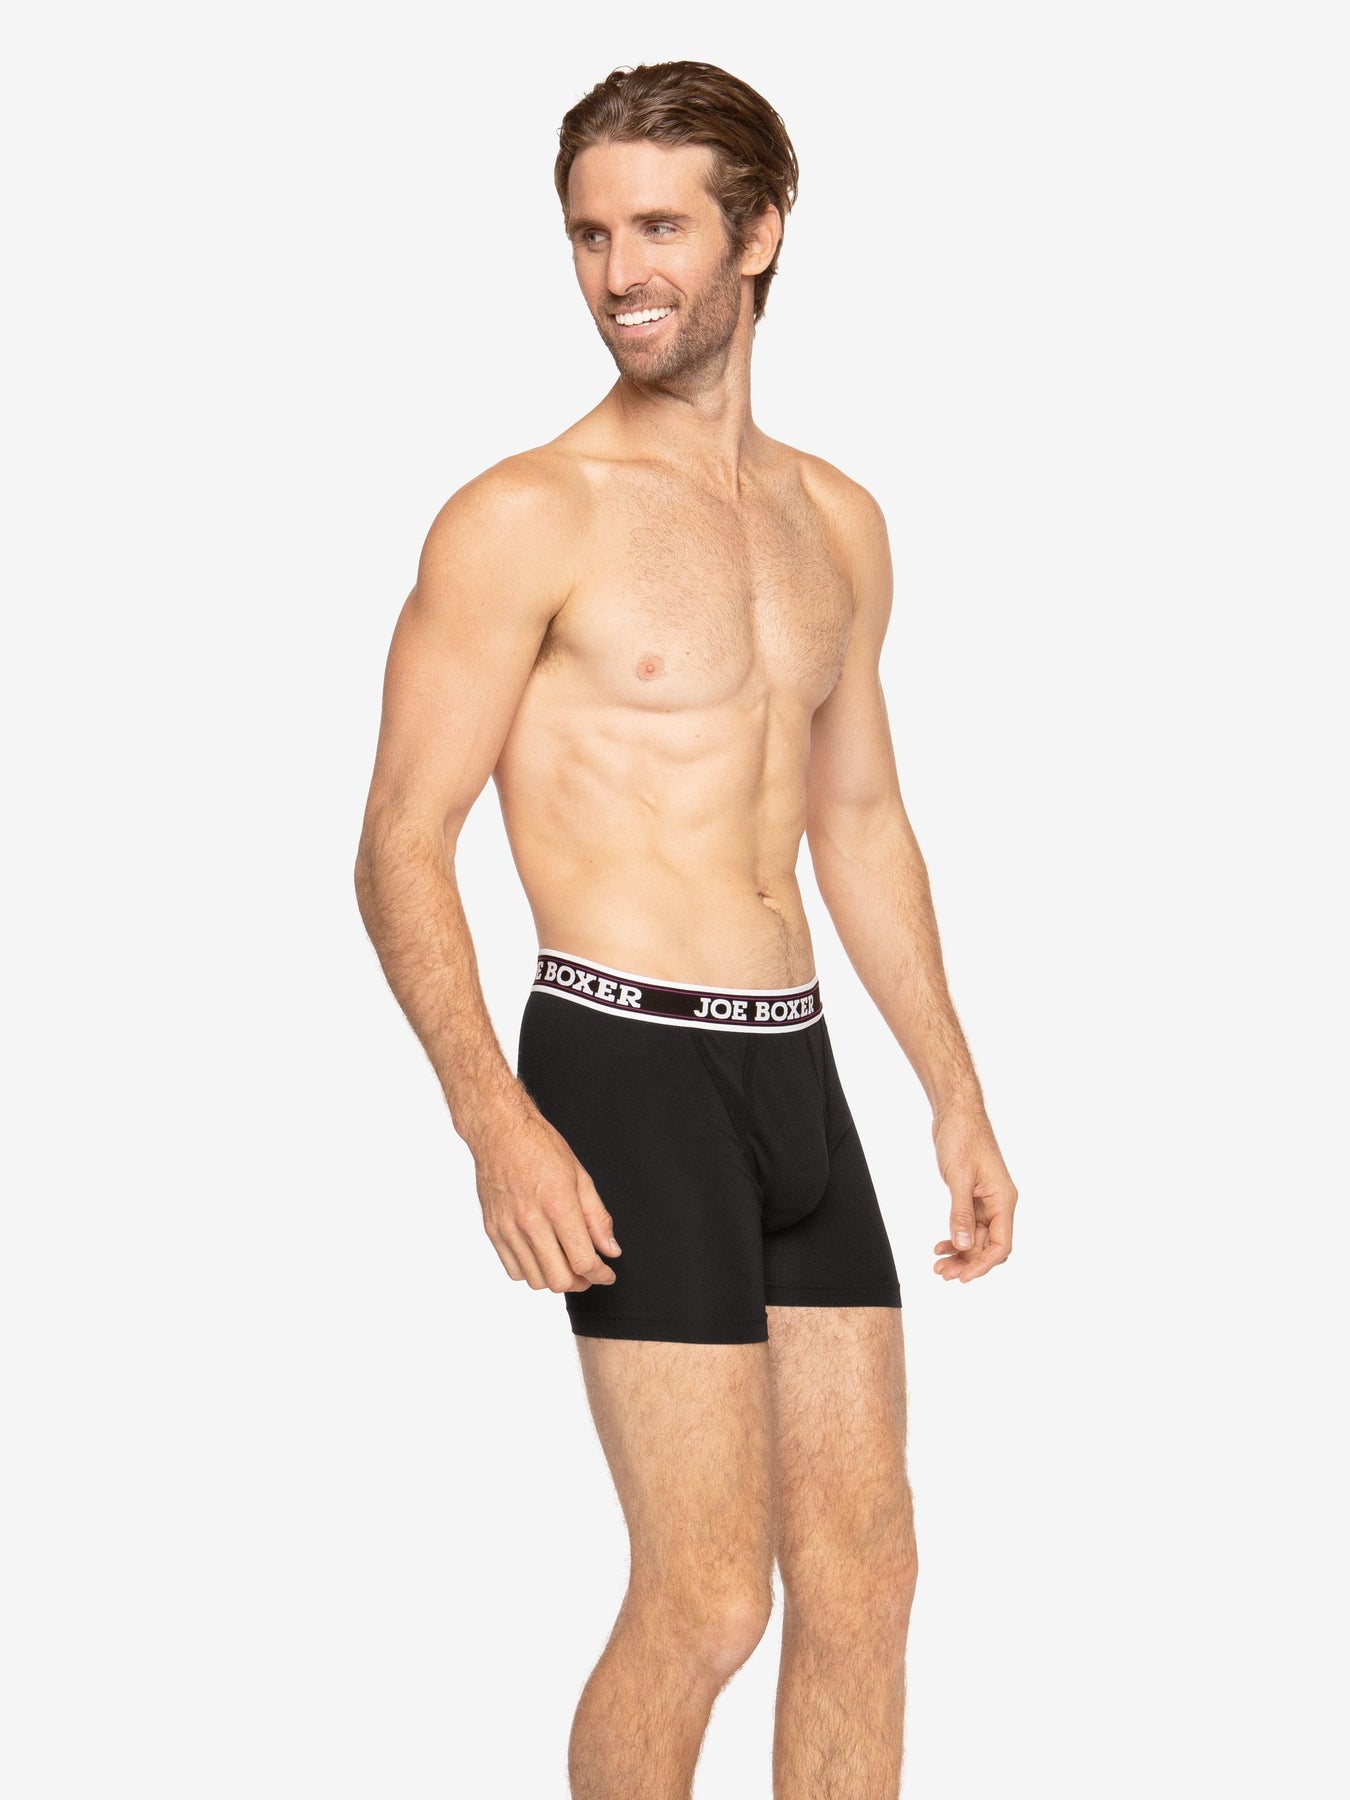 Men's Adult Star Wars Boxer Brief Underwear 3-Pack-Large